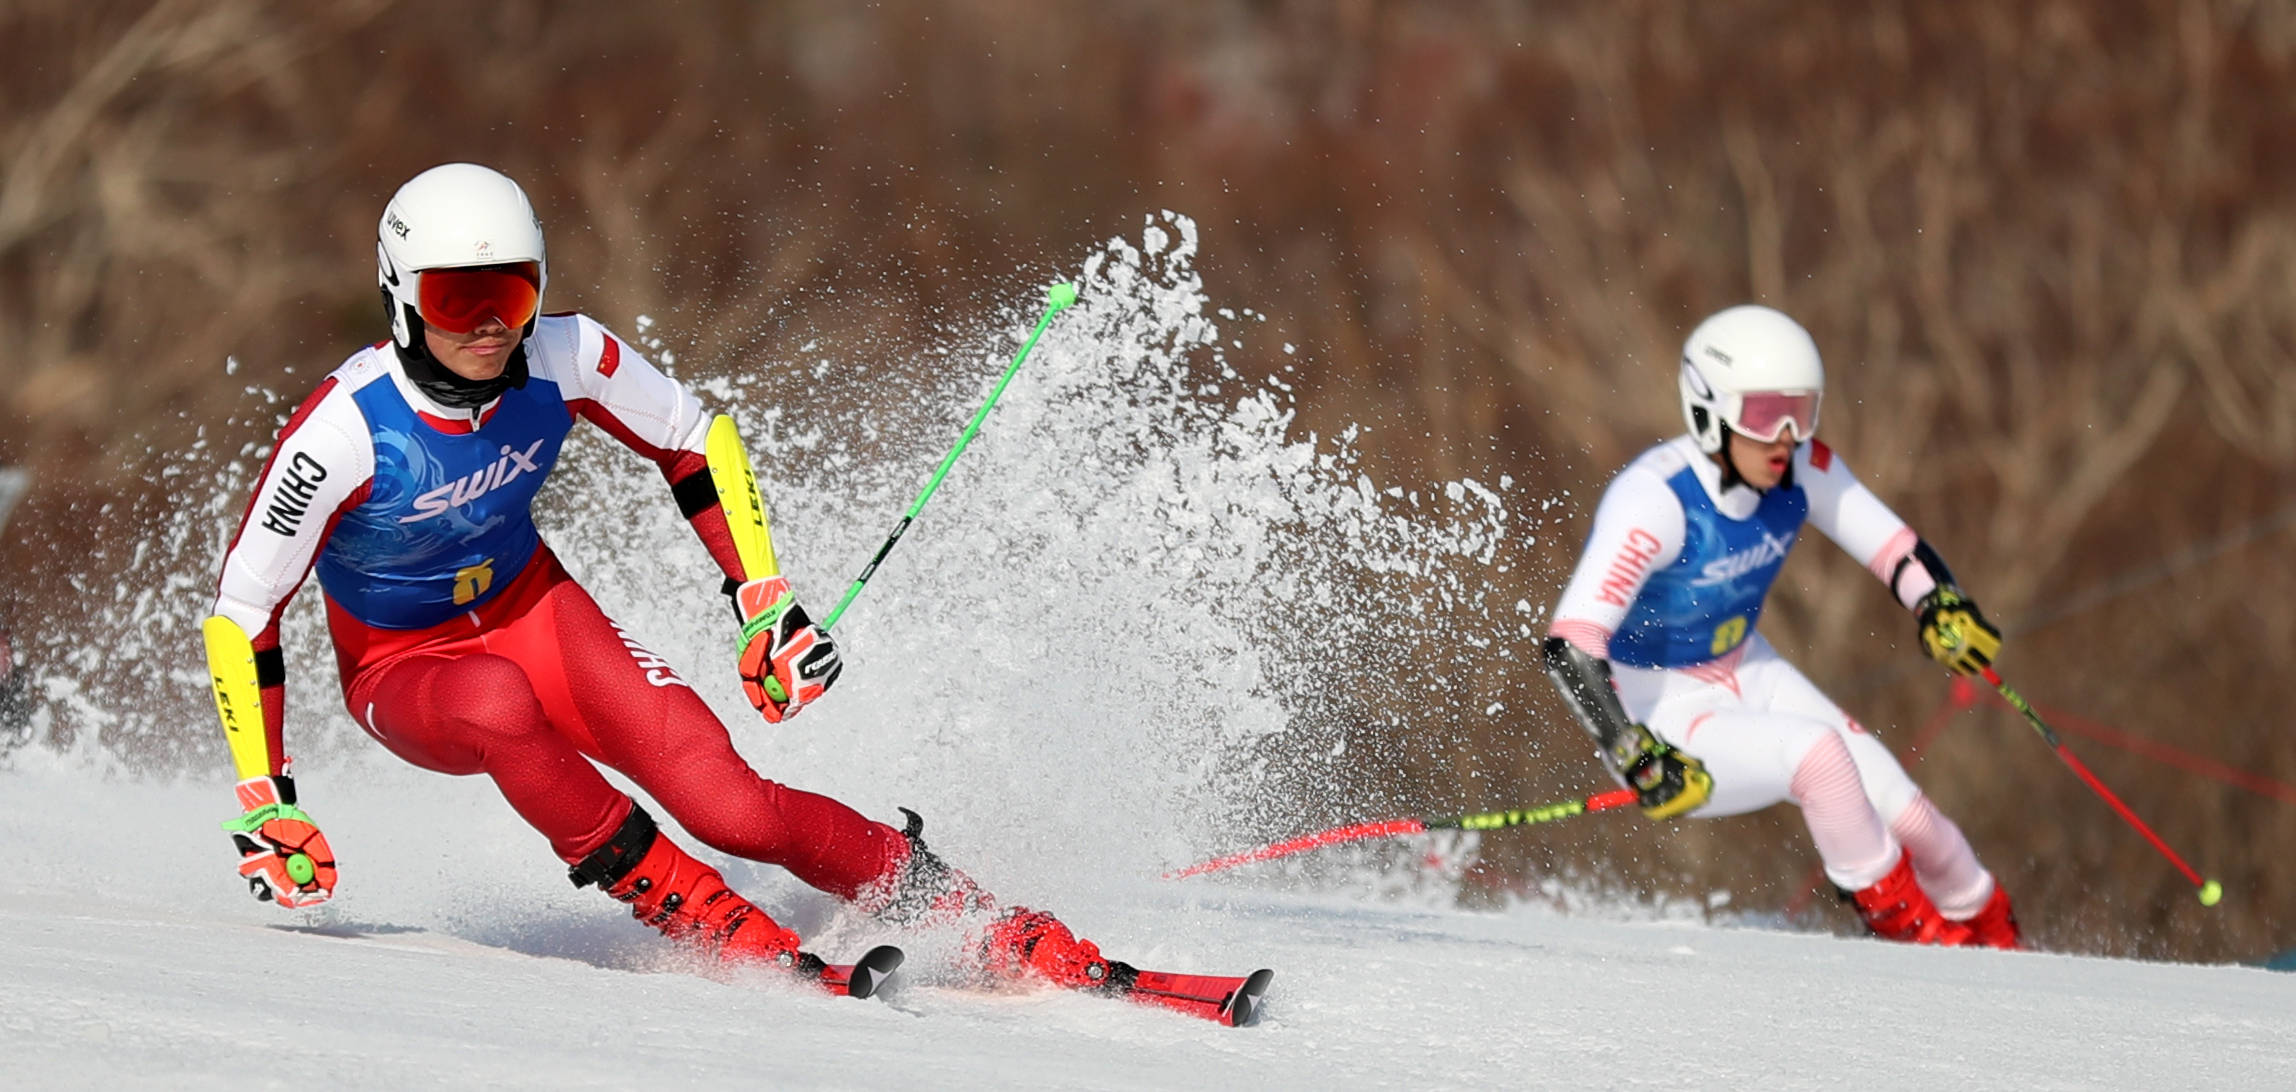 2021年世界高山滑雪锦标赛将于2月7日开幕